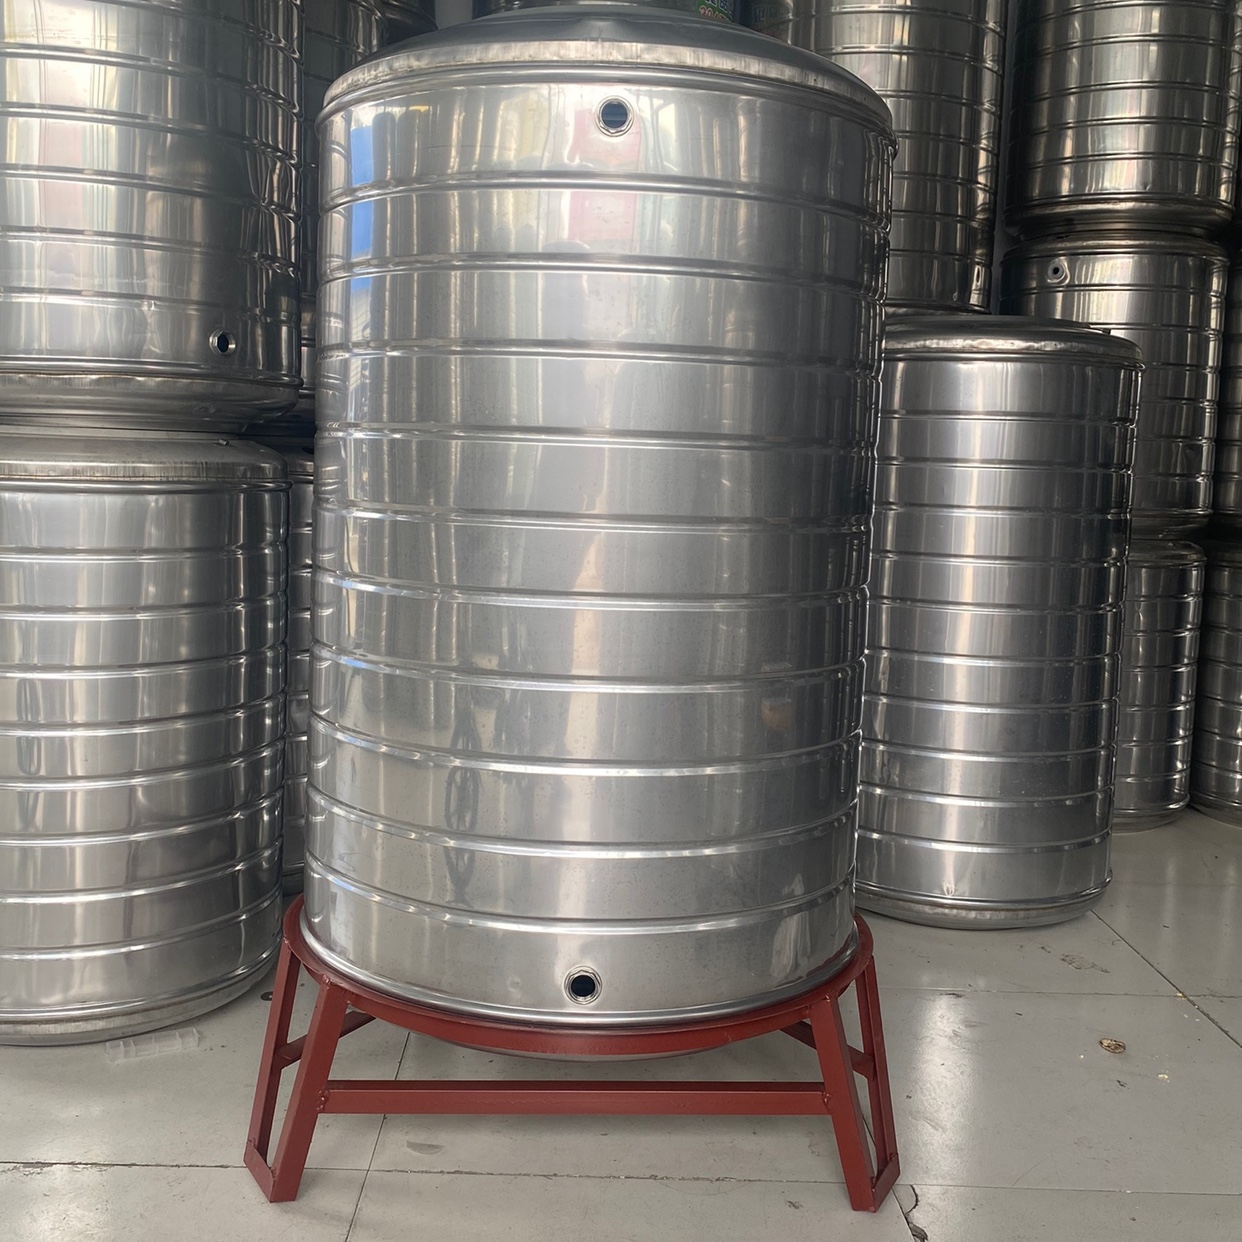 304不锈钢水箱储水桶水塔家用立式加厚太阳能楼顶厨房蓄水罐酒罐